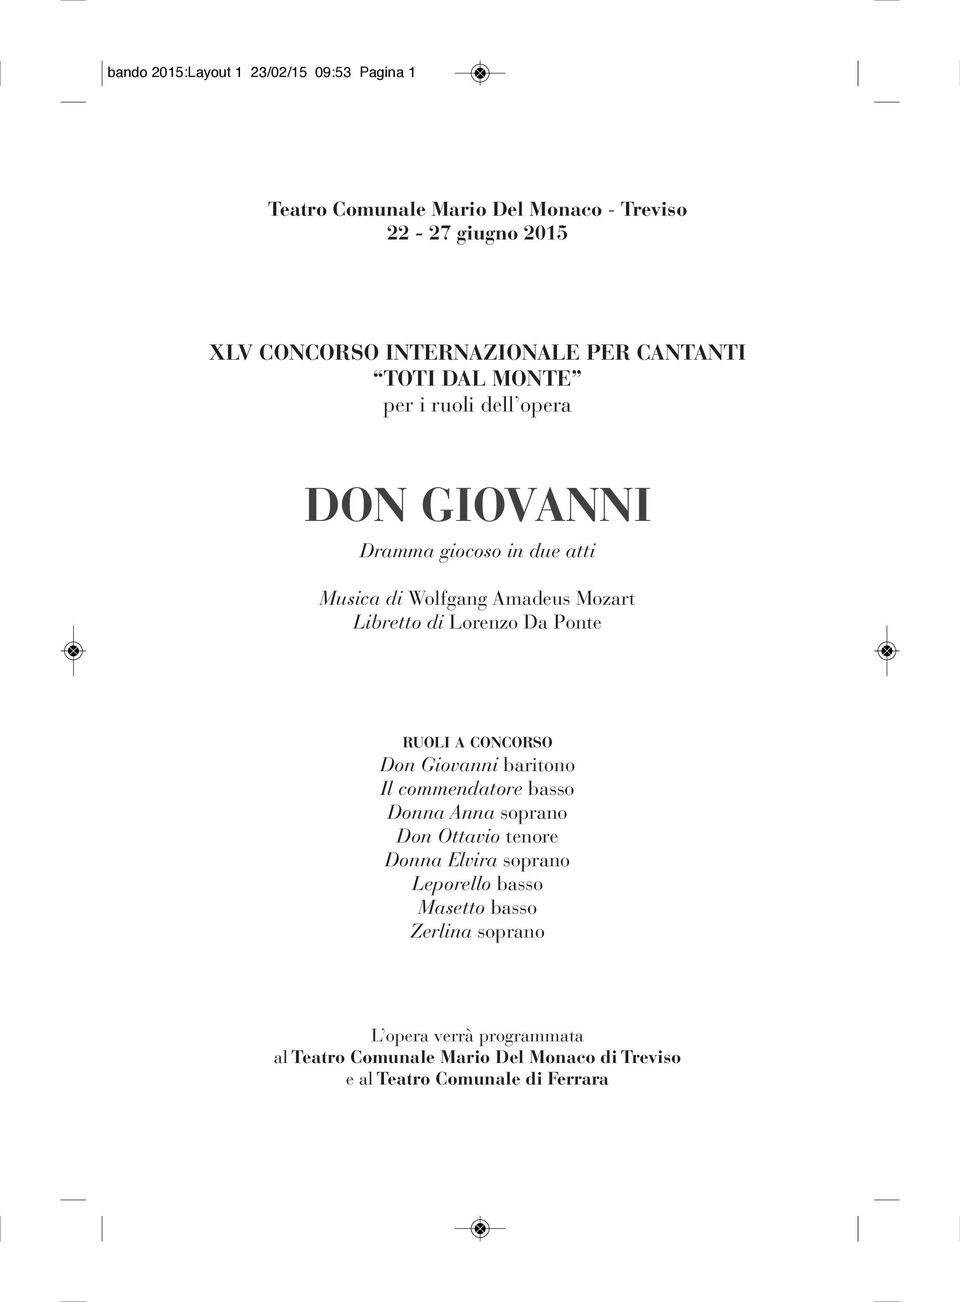 Lorenzo Da Ponte ruoli a concorso Don Giovanni baritono Il commendatore basso Donna Anna soprano Don Ottavio tenore Donna Elvira soprano